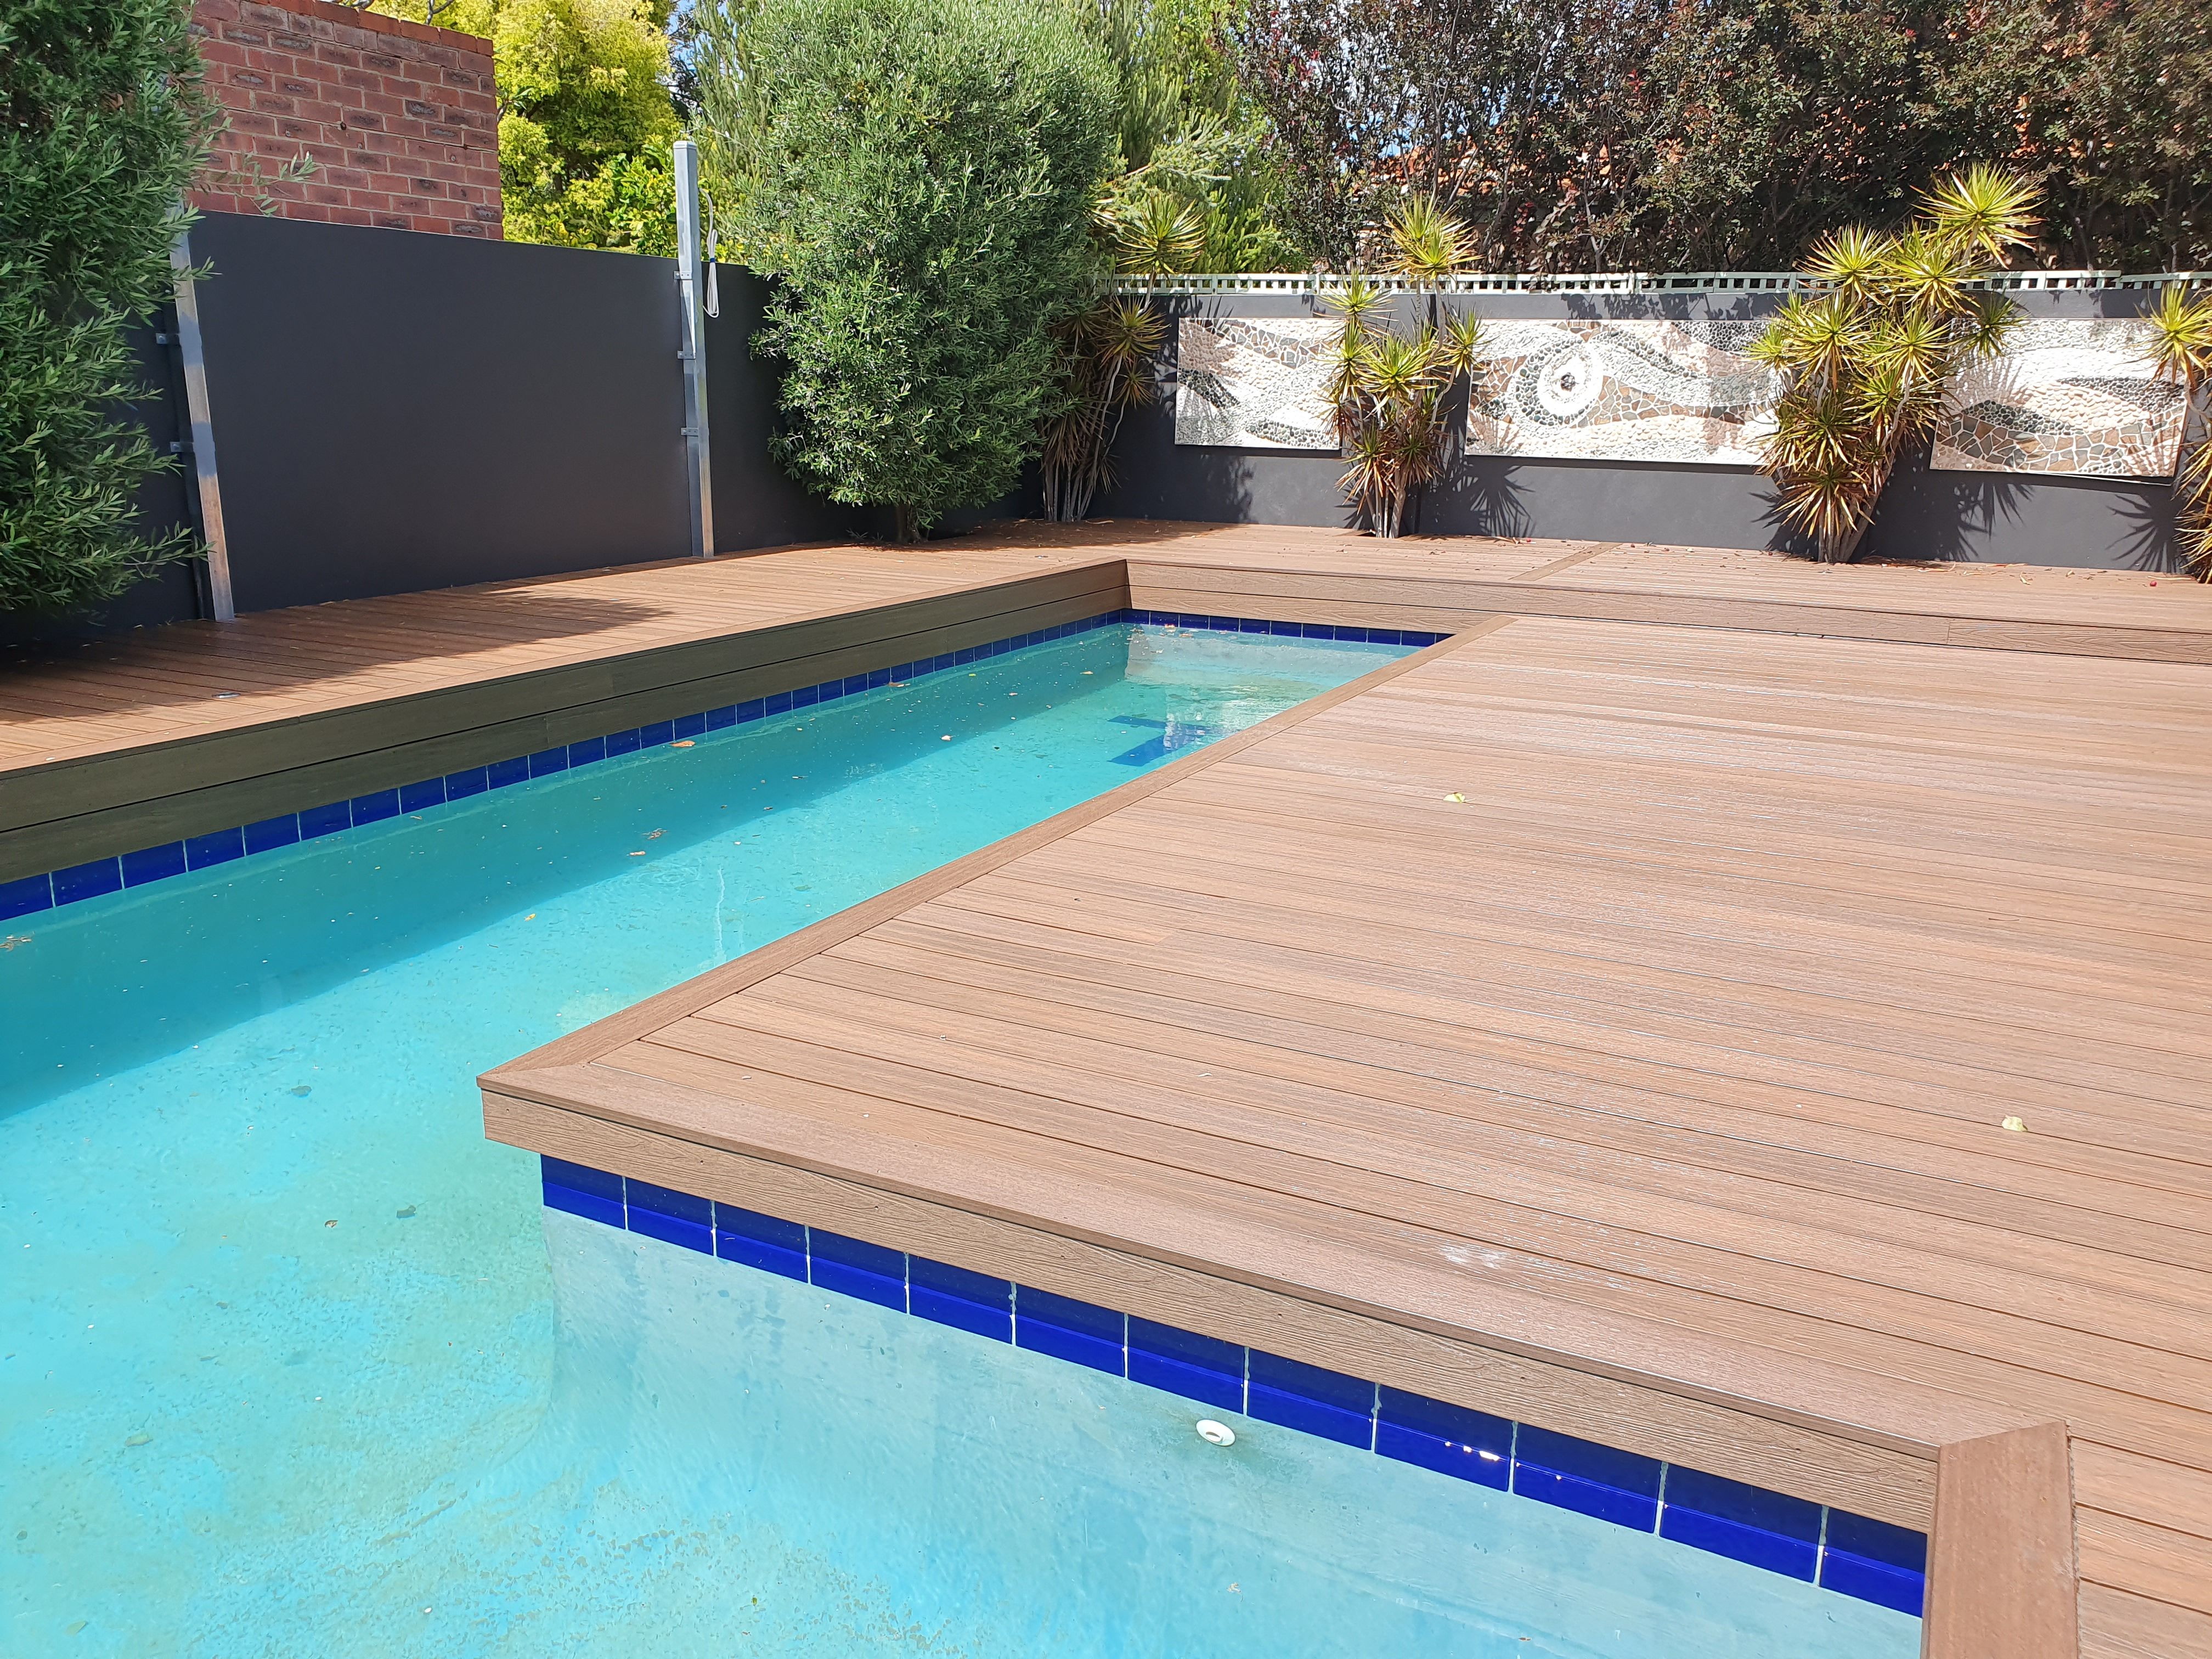 Composite Pool Deck | Wooden pool deck, Wood pool deck, Backyard pool